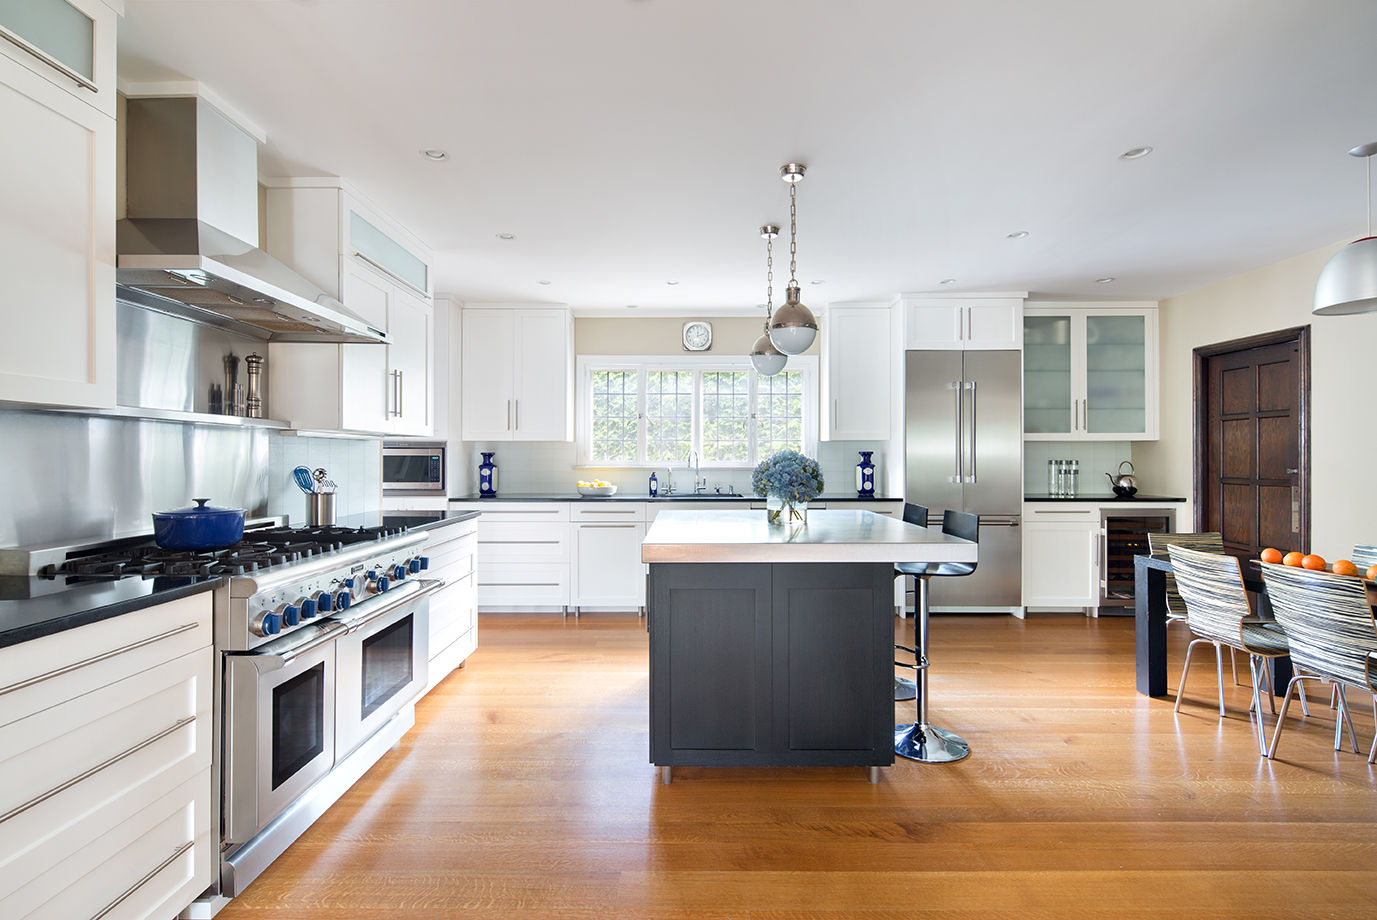 Kitchens, Clean Design Clean Design Dapur Modern